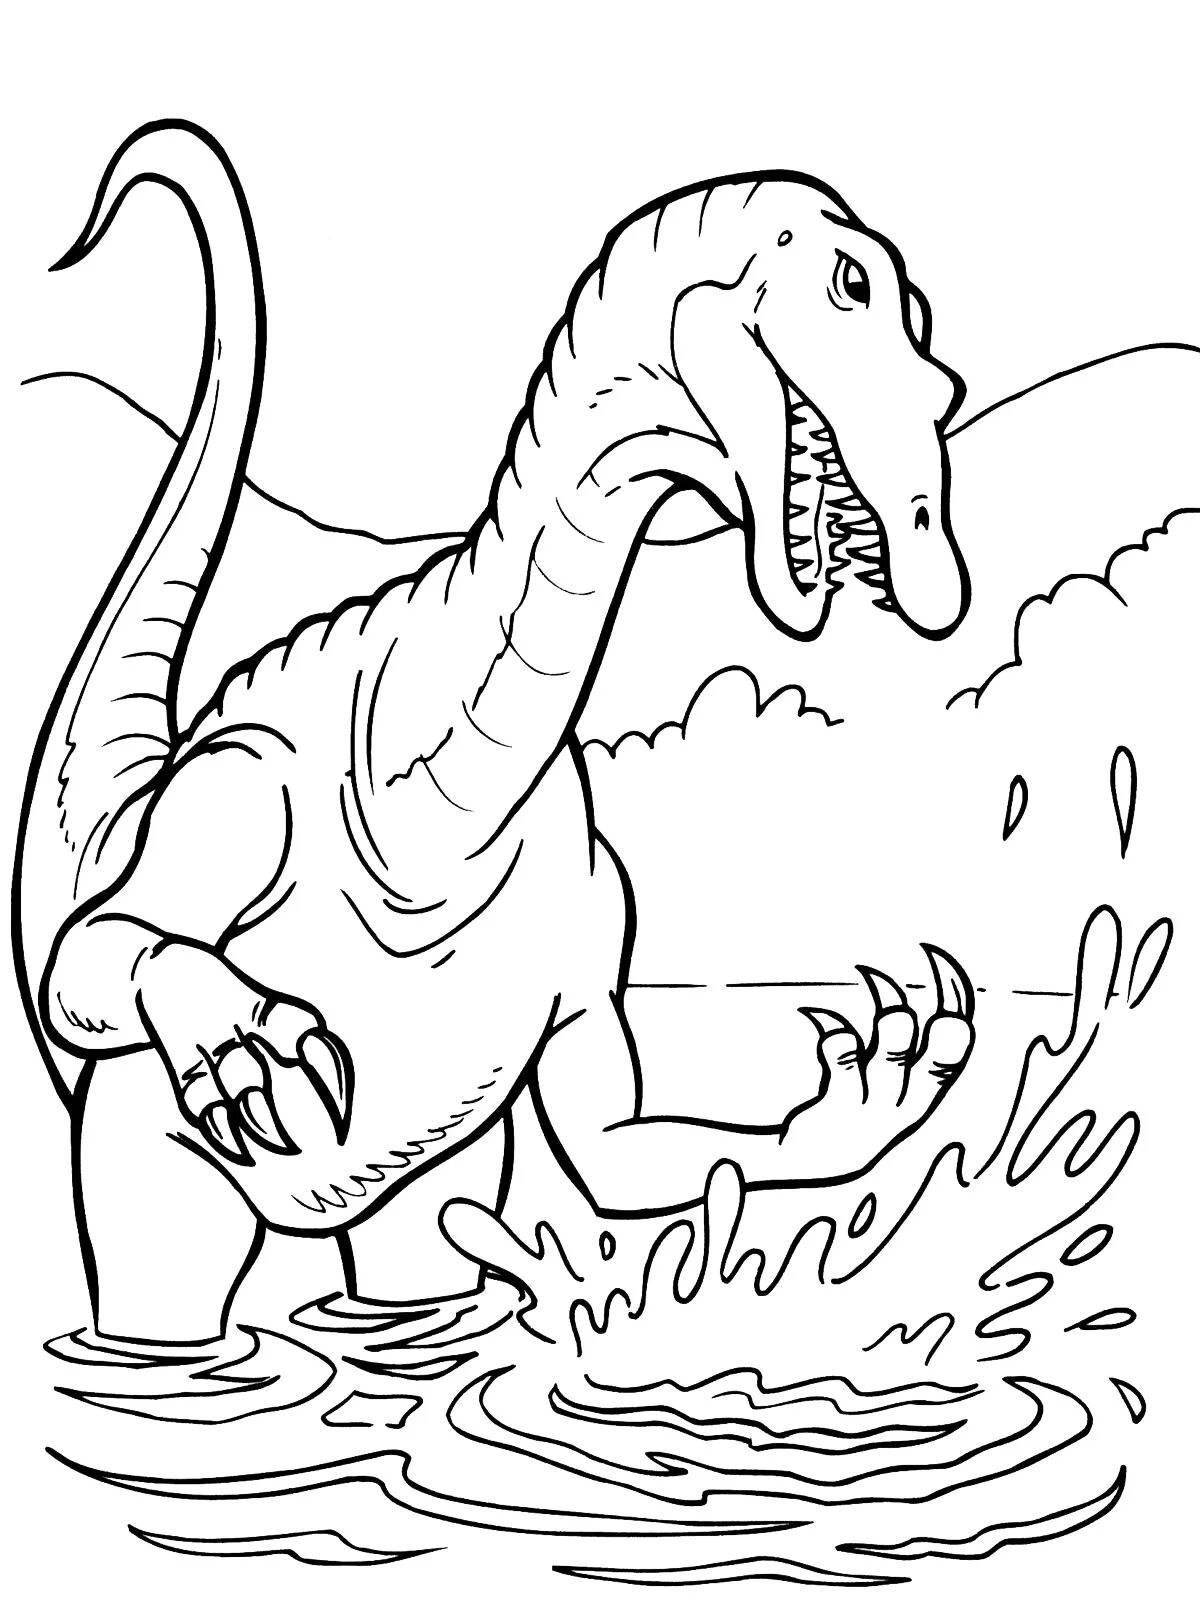 Trubosaurus incredible coloring book